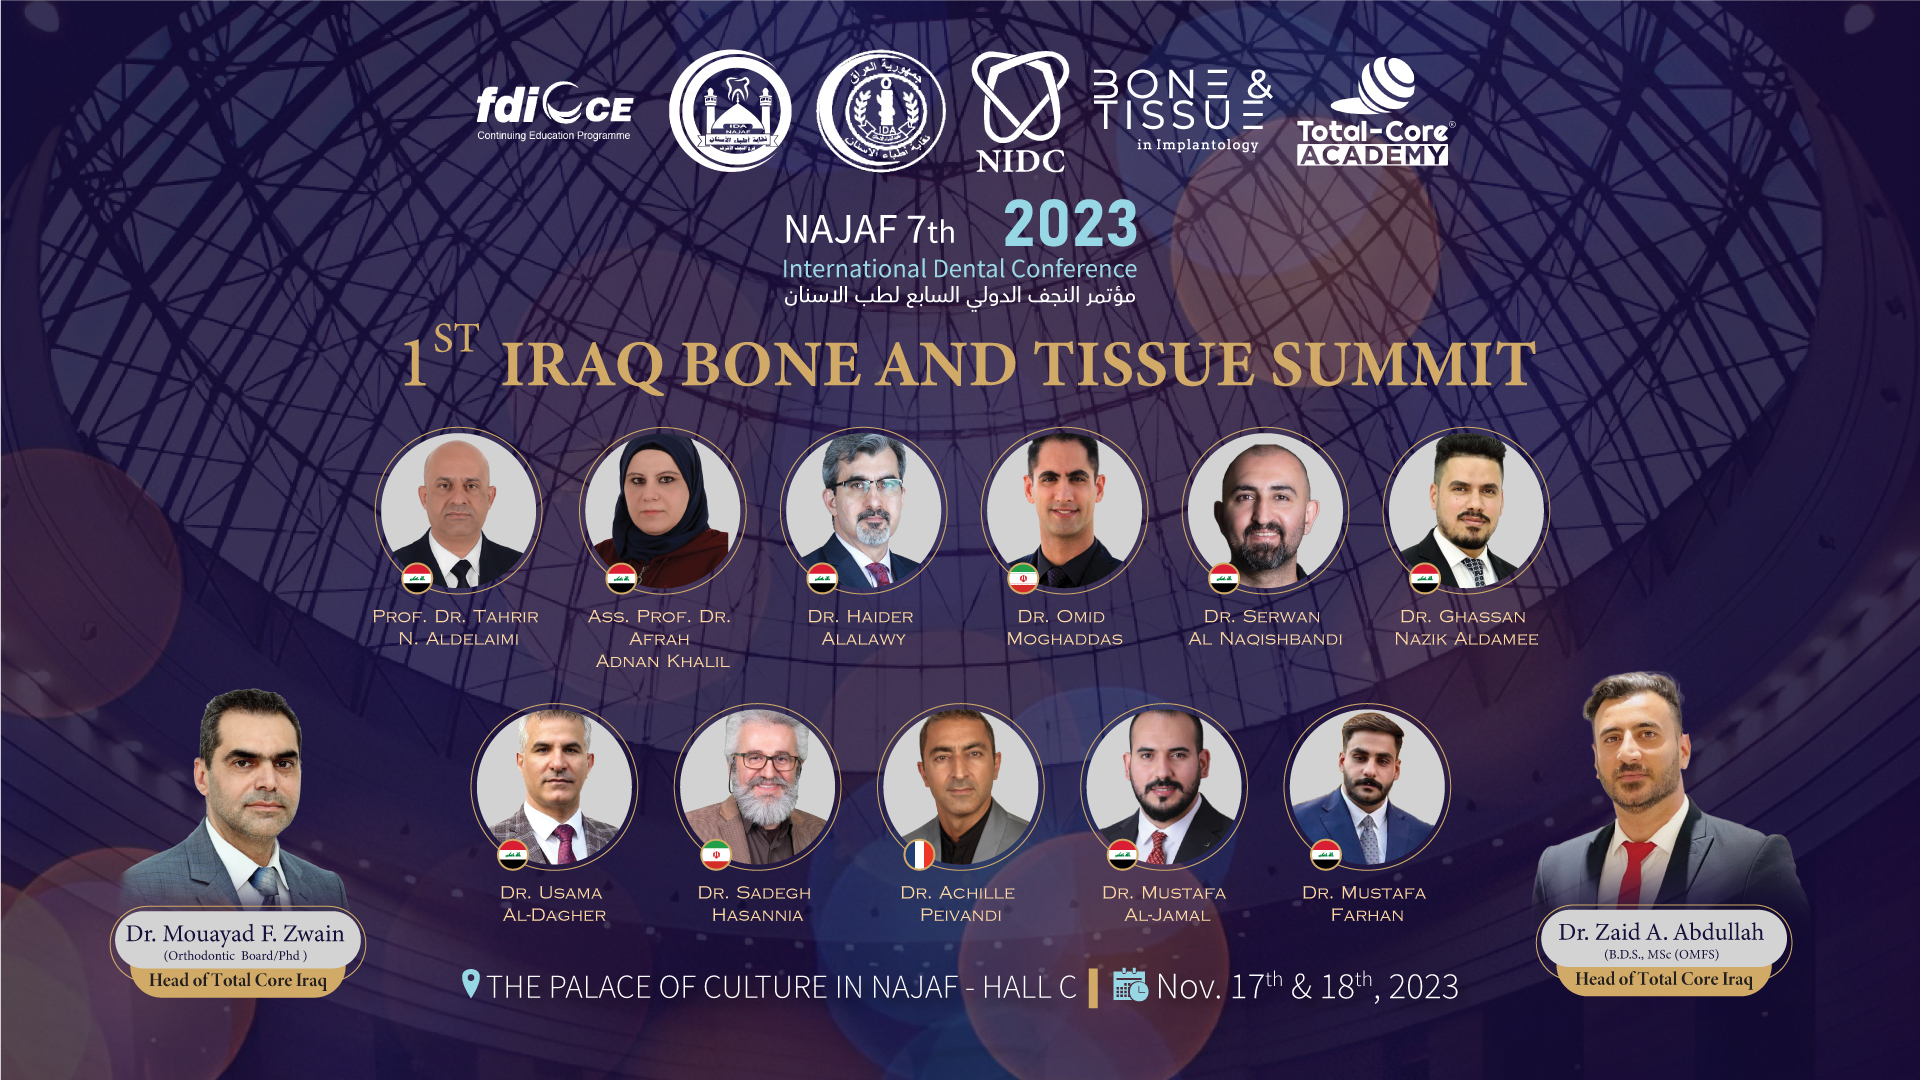 1st Iraq Bone and Tissue Summit